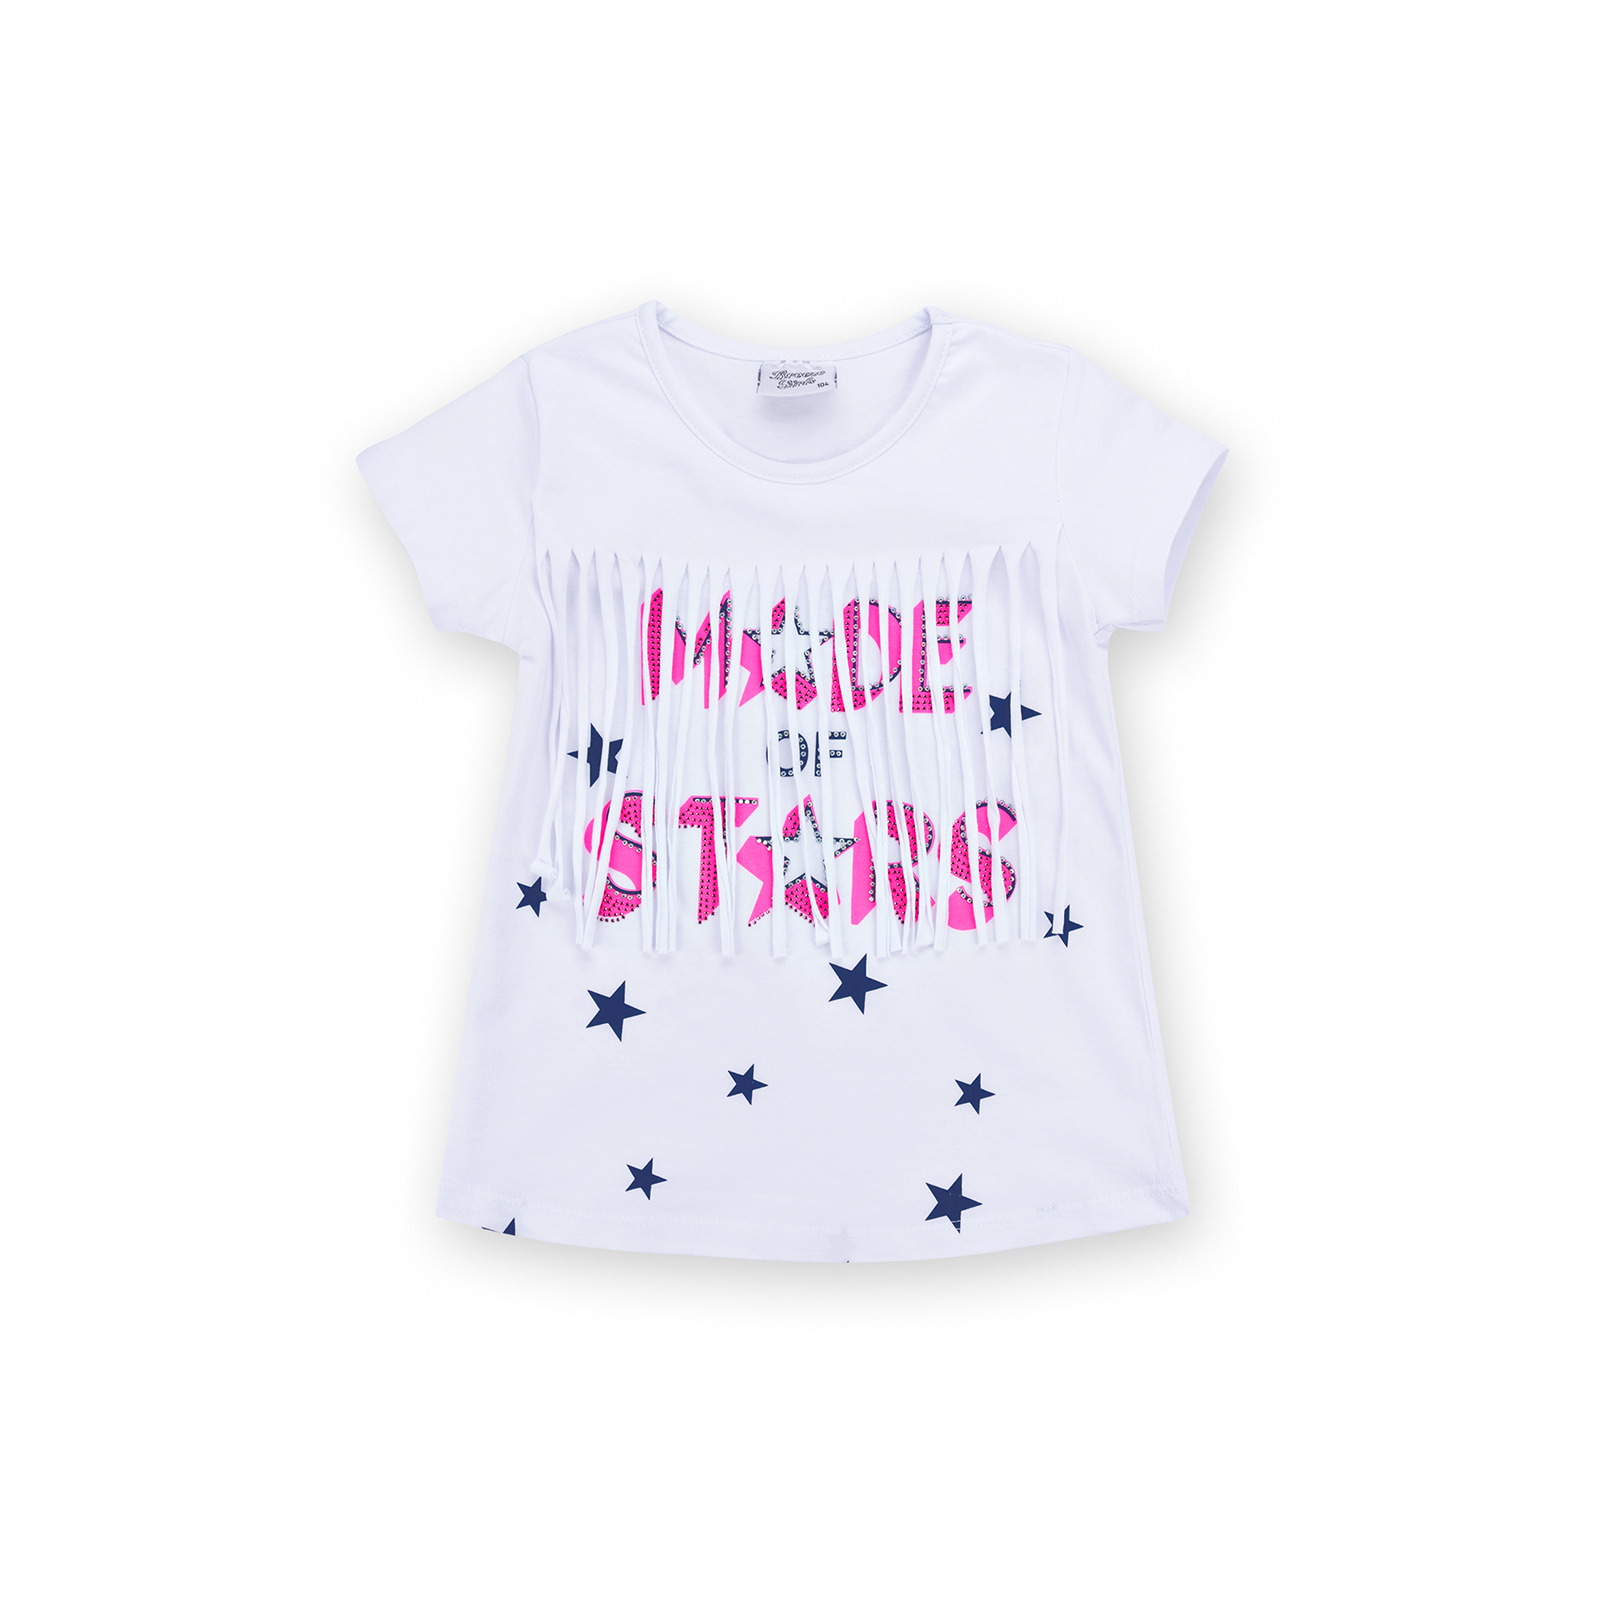 Набор детской одежды Breeze футболка со звездочками с шортами (9036-122G-pink) изображение 2